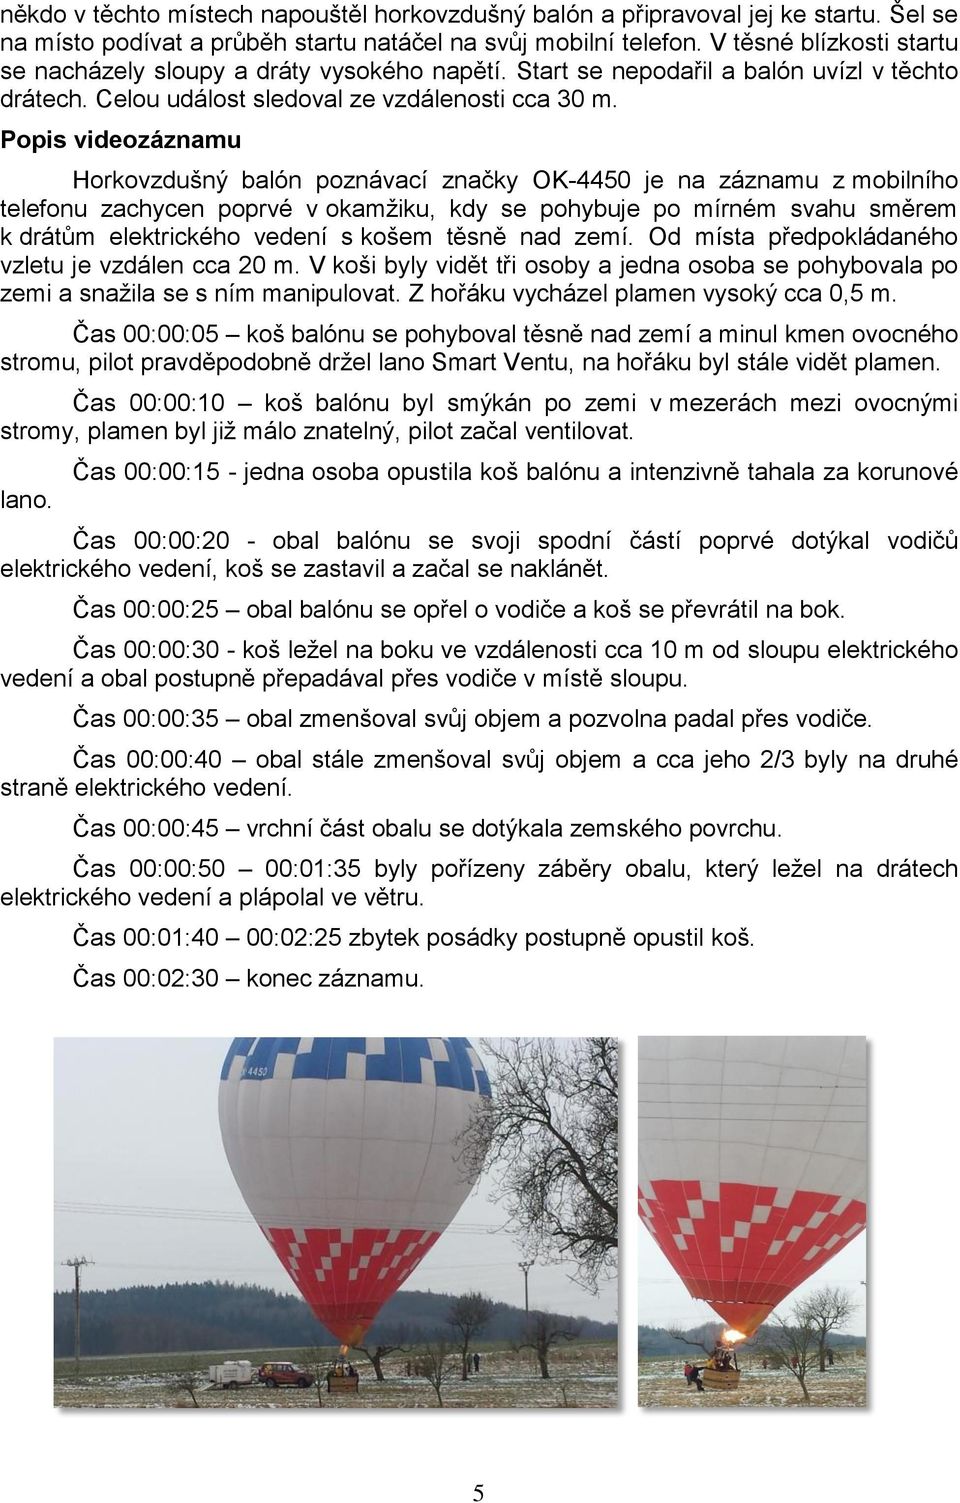 Popis videozáznamu Horkovzdušný balón poznávací značky OK-4450 je na záznamu z mobilního telefonu zachycen poprvé v okamžiku, kdy se pohybuje po mírném svahu směrem k drátům elektrického vedení s